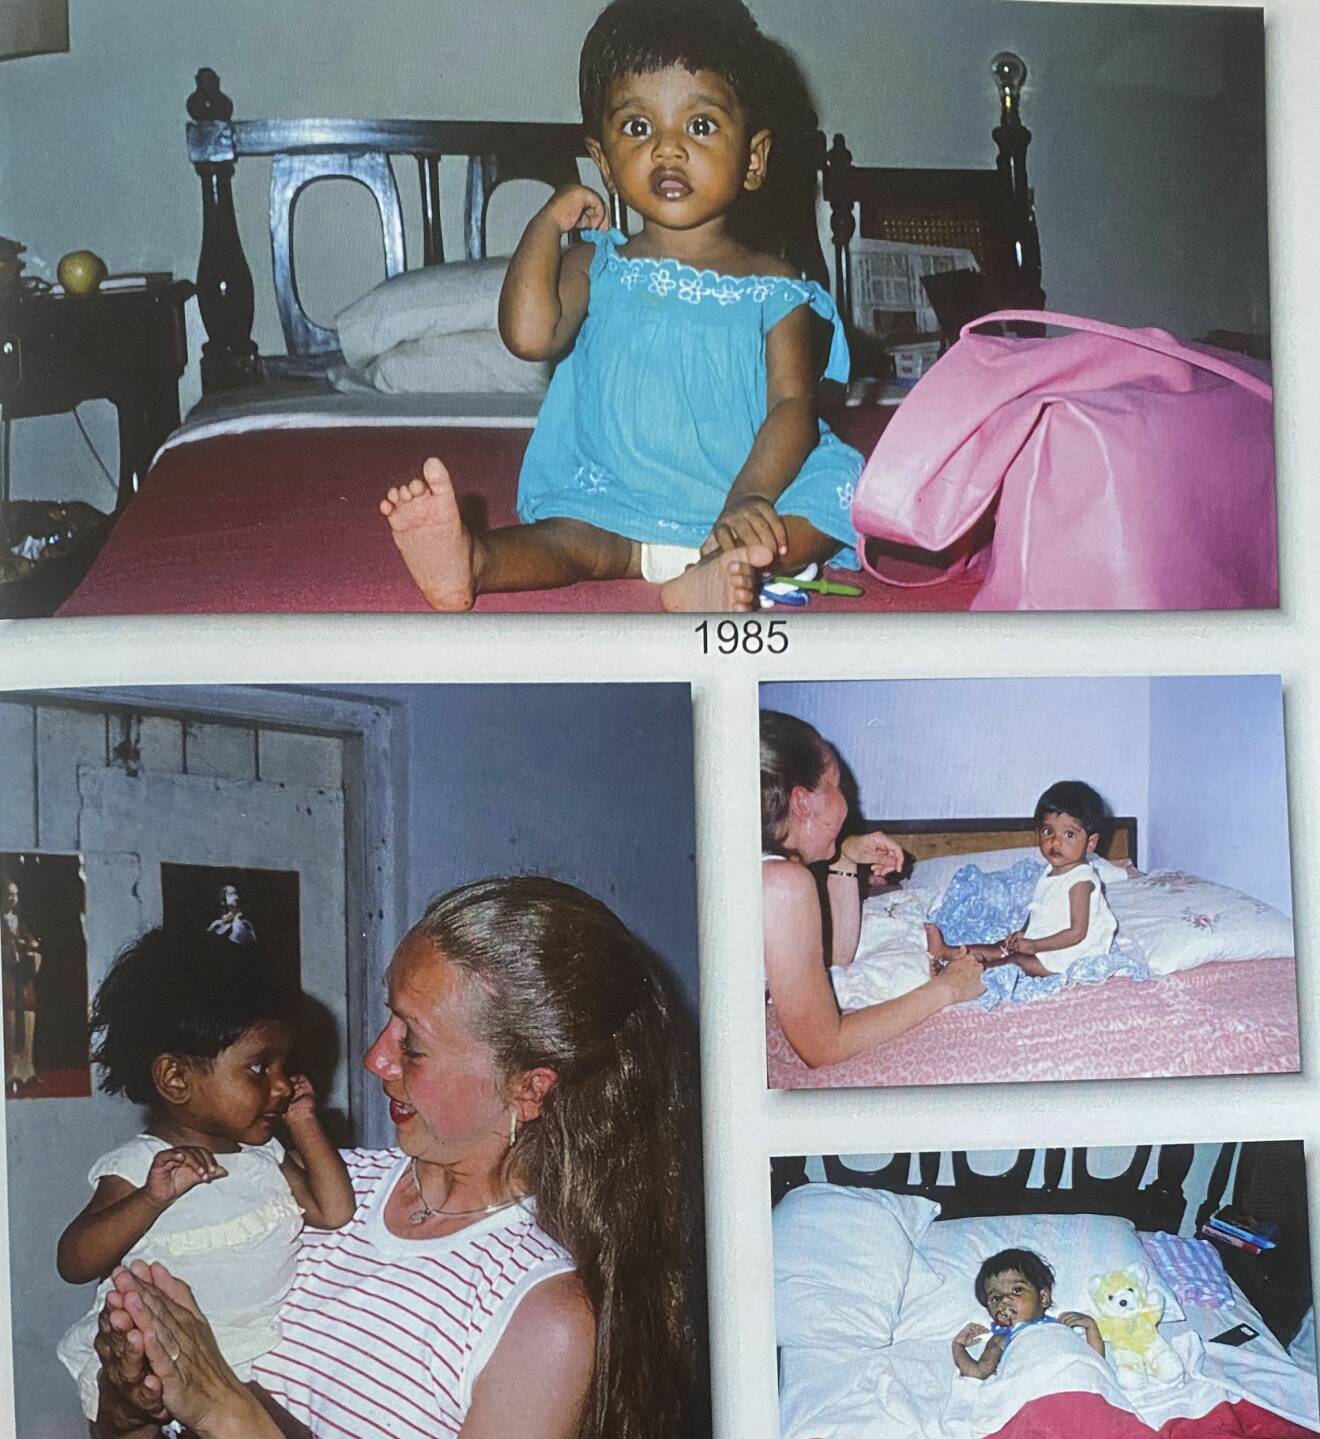 Drygt ettåriga Linn och hennes svenska mamma på en sida i fotoalbumet 1985.